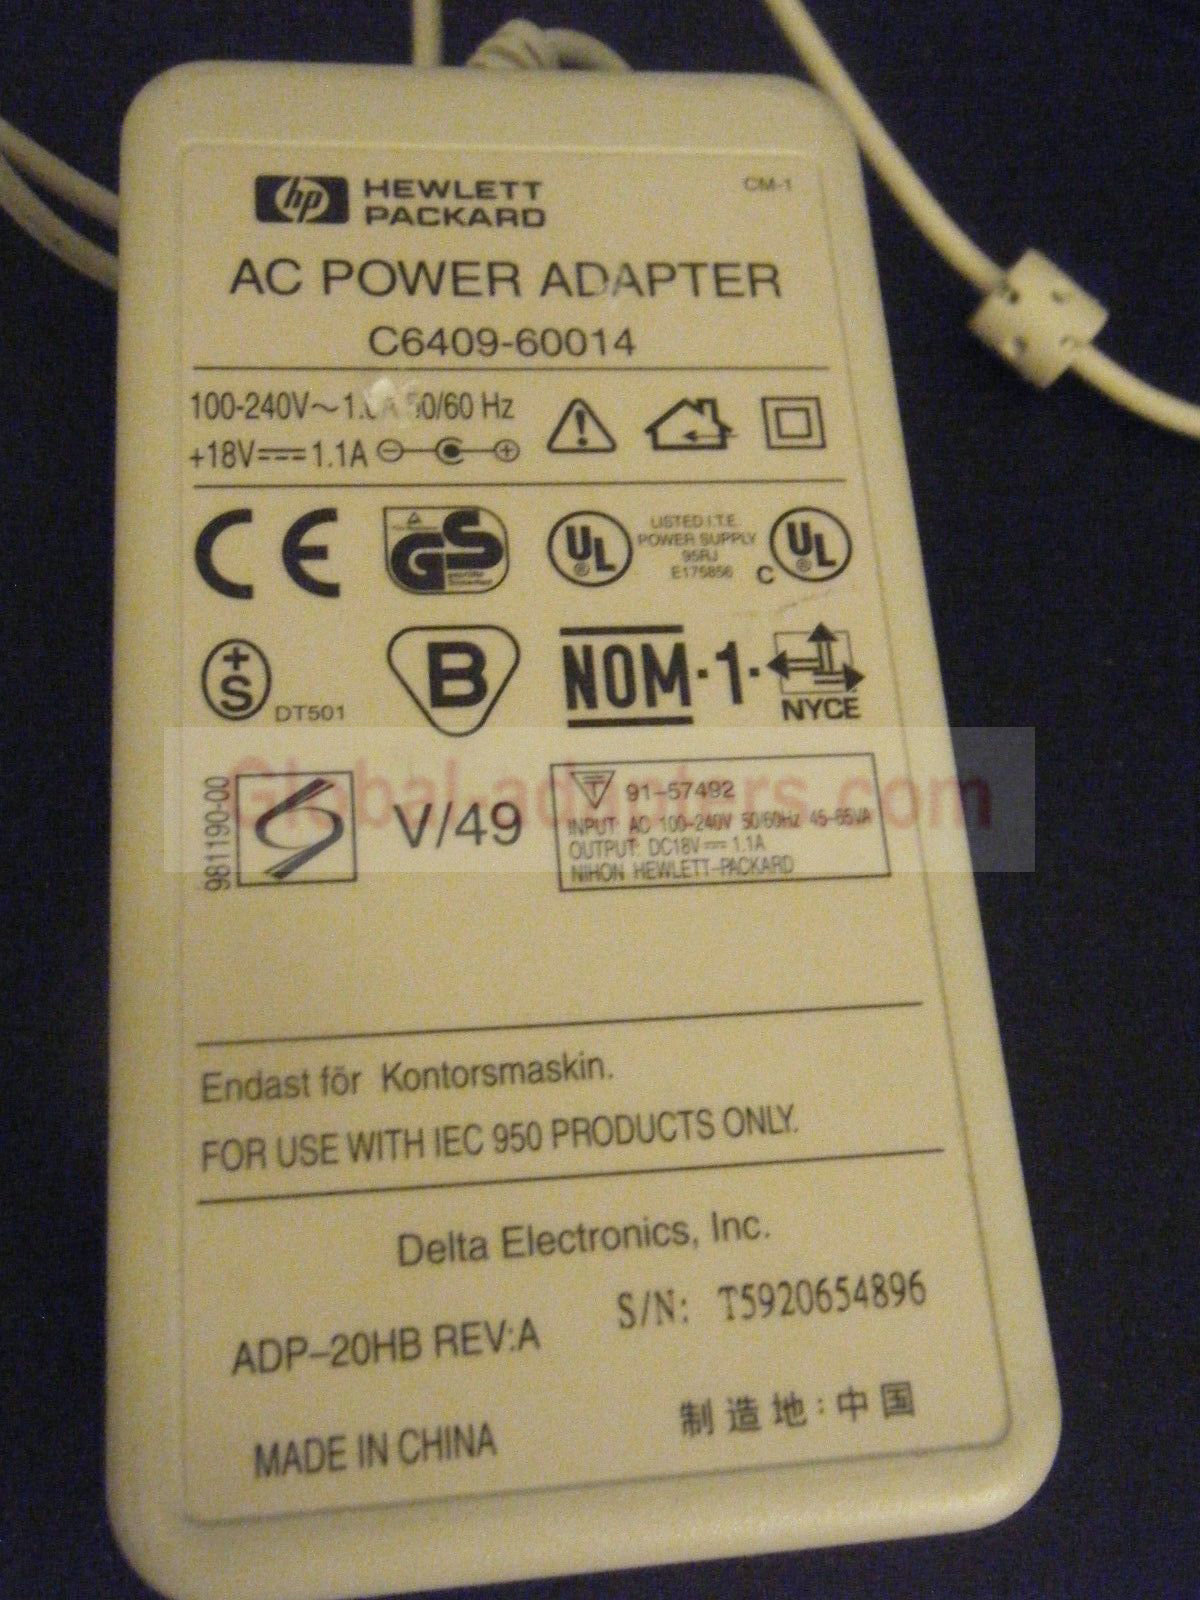 NEW 18V 1.1A Hewlett Packard C6409-60014 AC Power Adapter